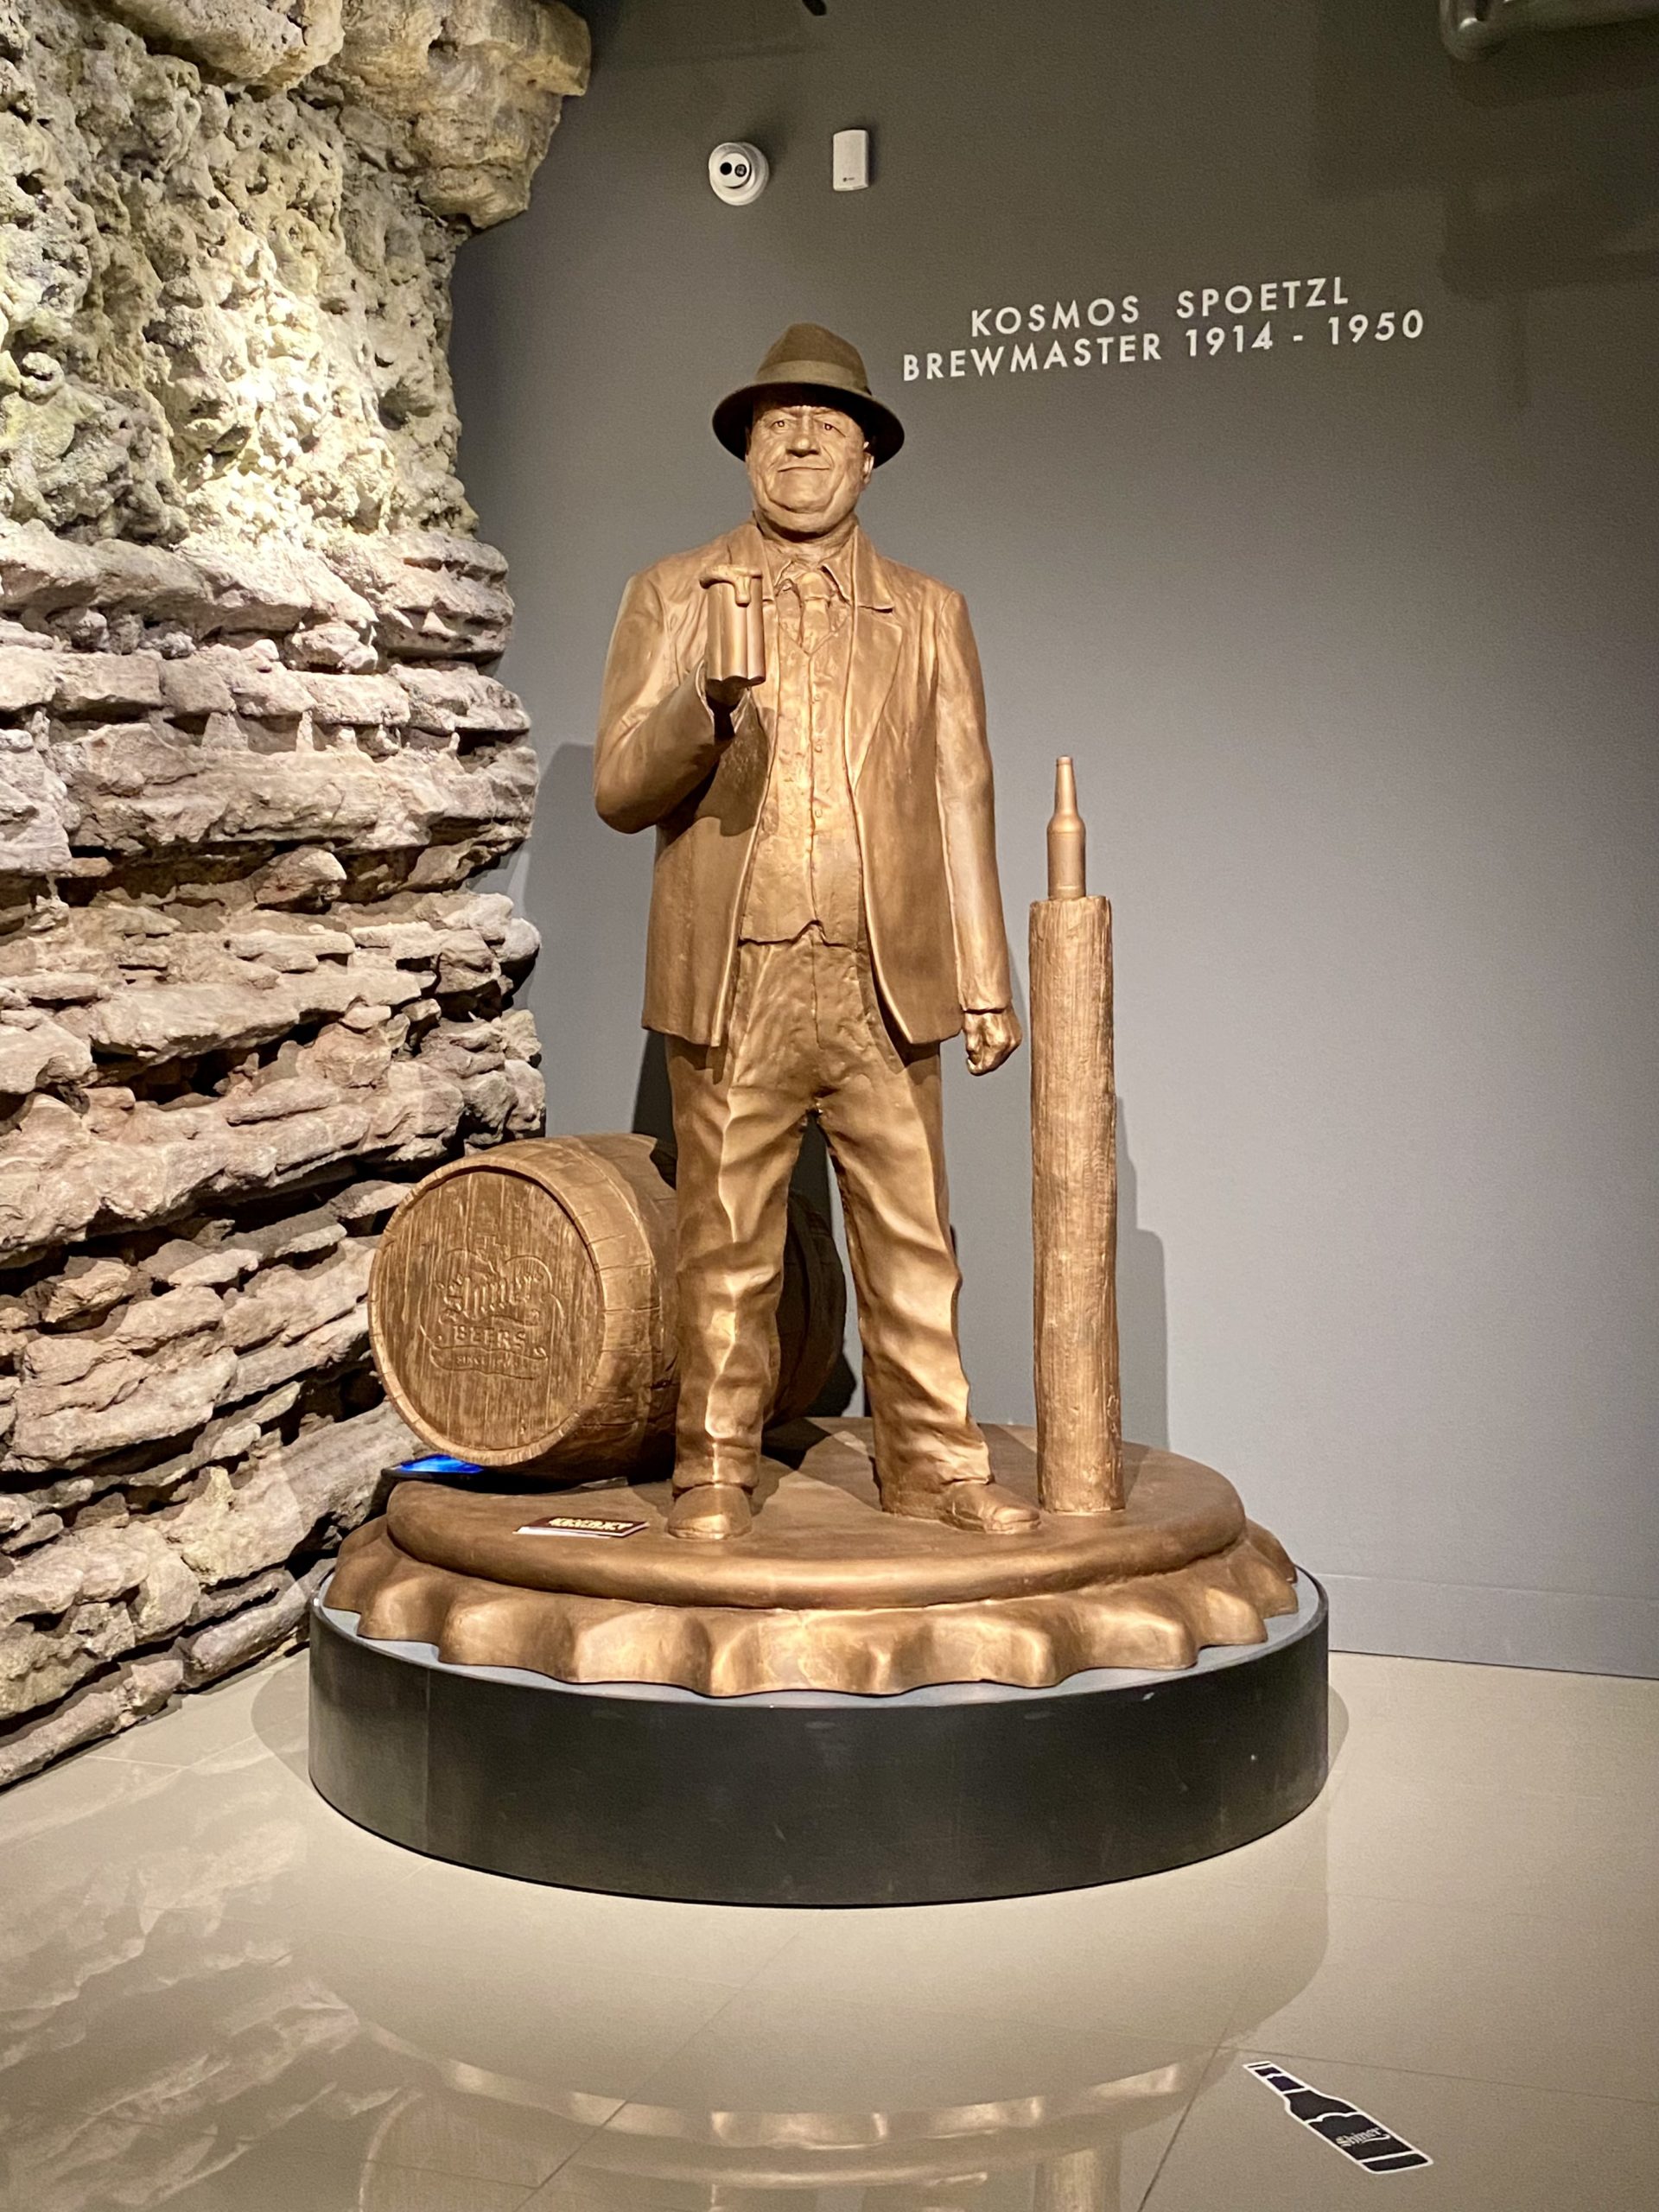 a statue of a man holding a barrel and a barrel